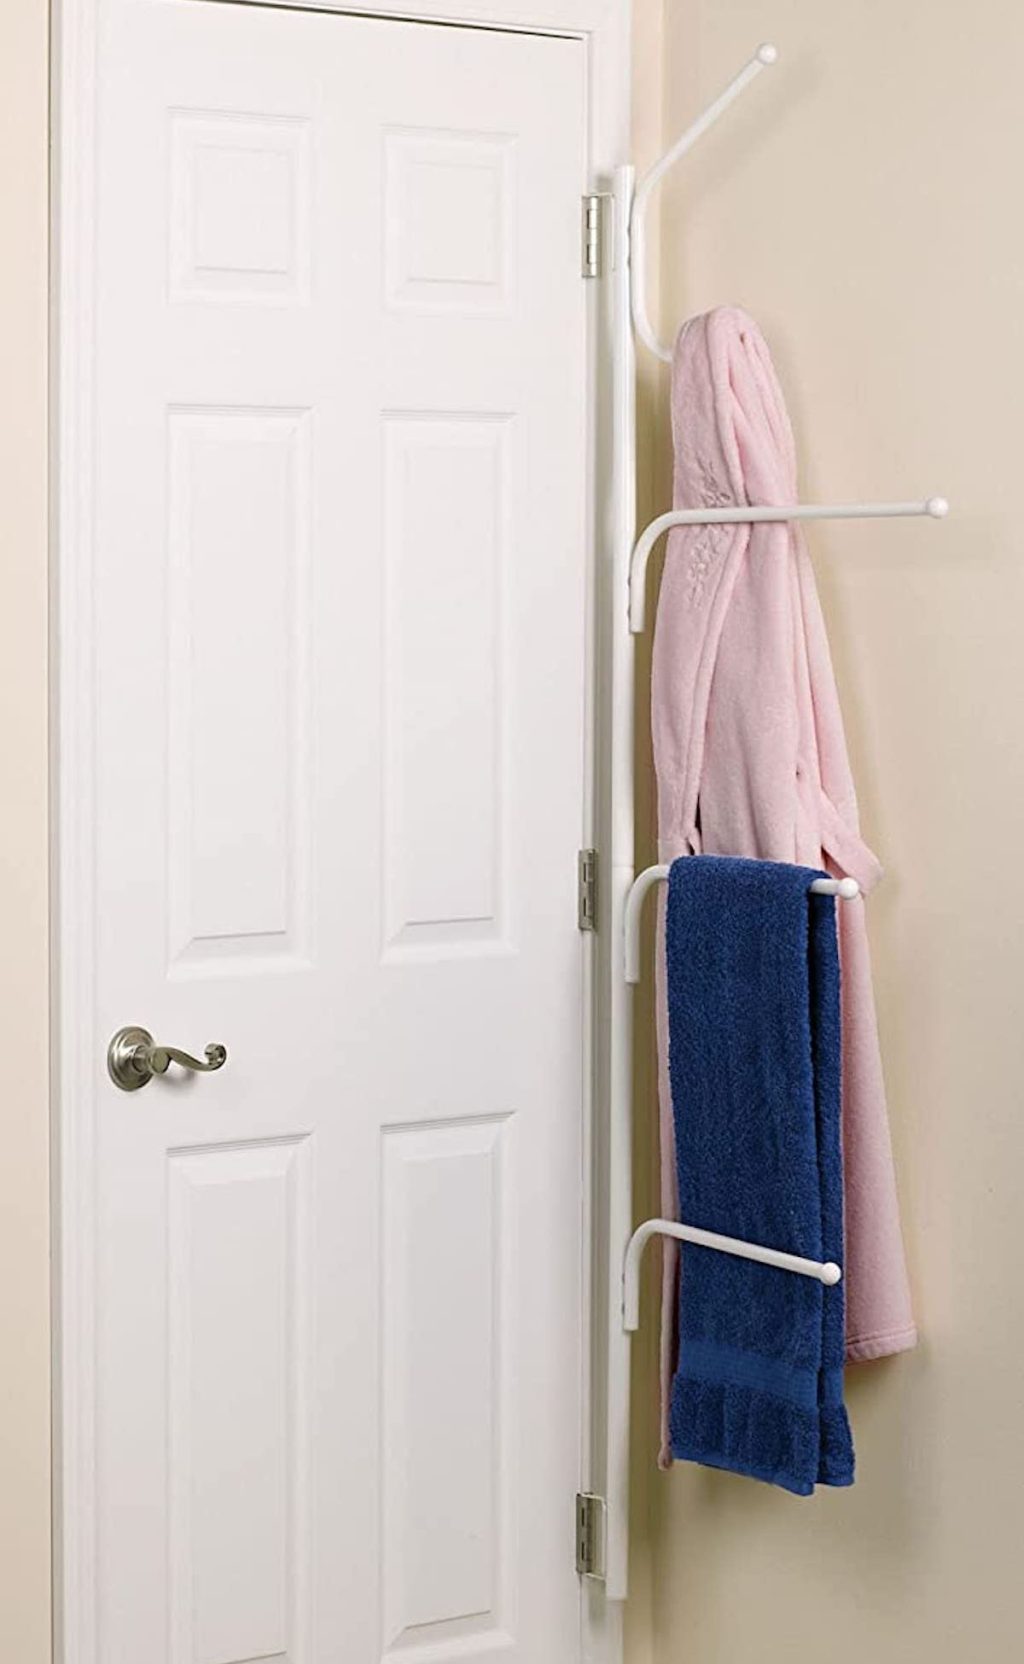 white metal towel rack hanging on back of door hinges in bathroom